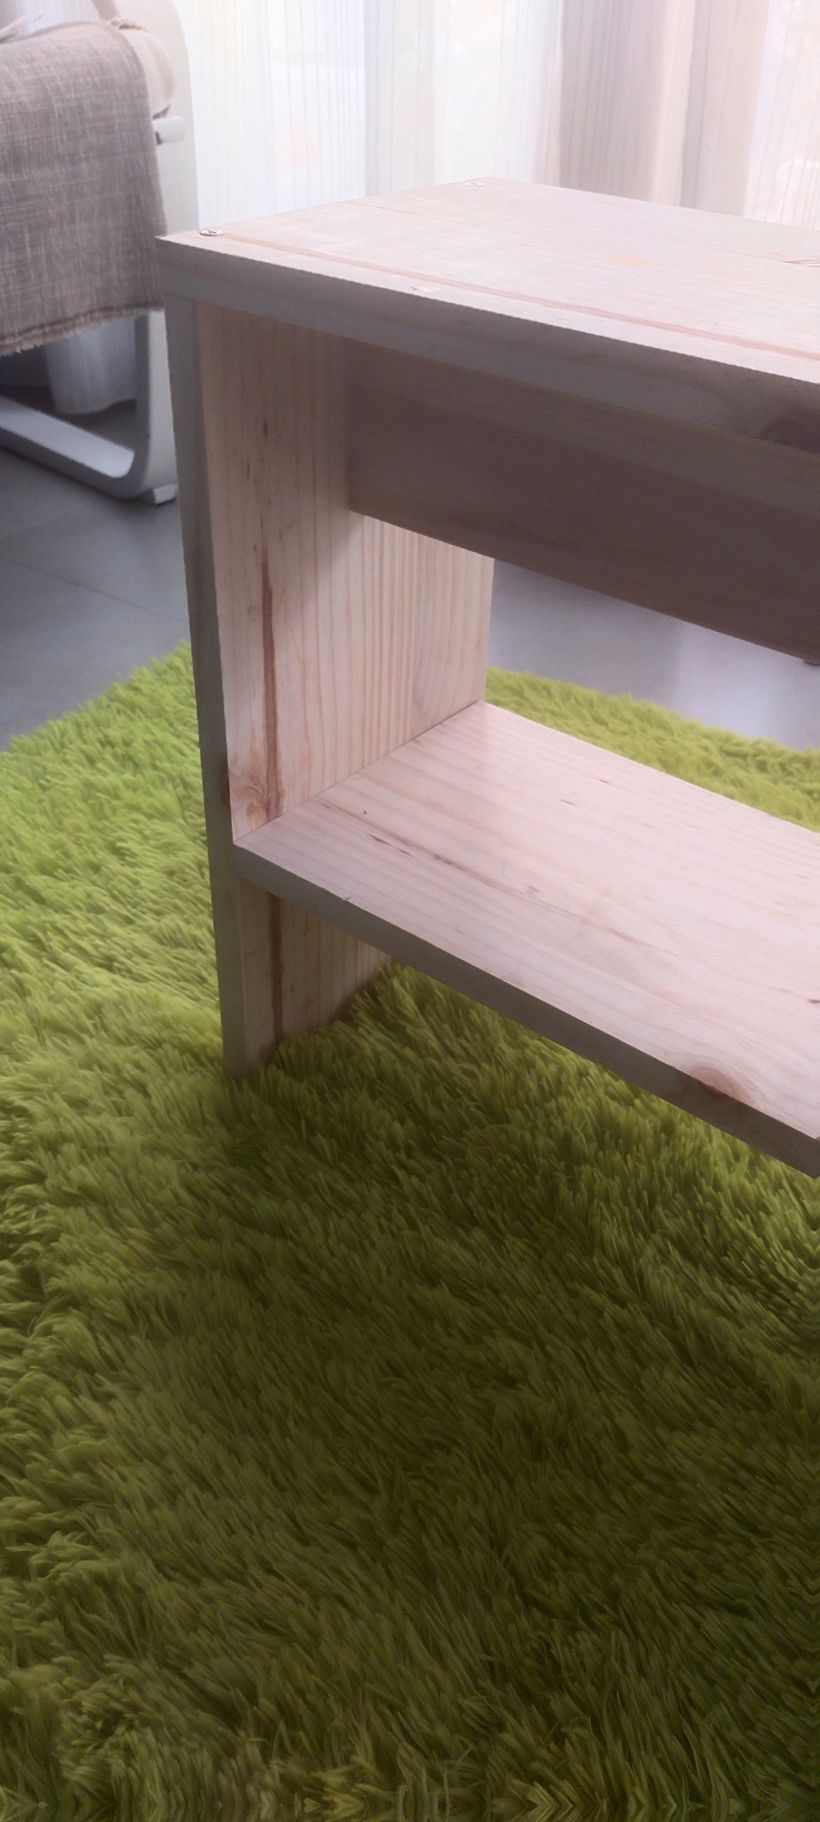 Mi proyecto del curso: Carpintería: fabrica tu primer mueble 2